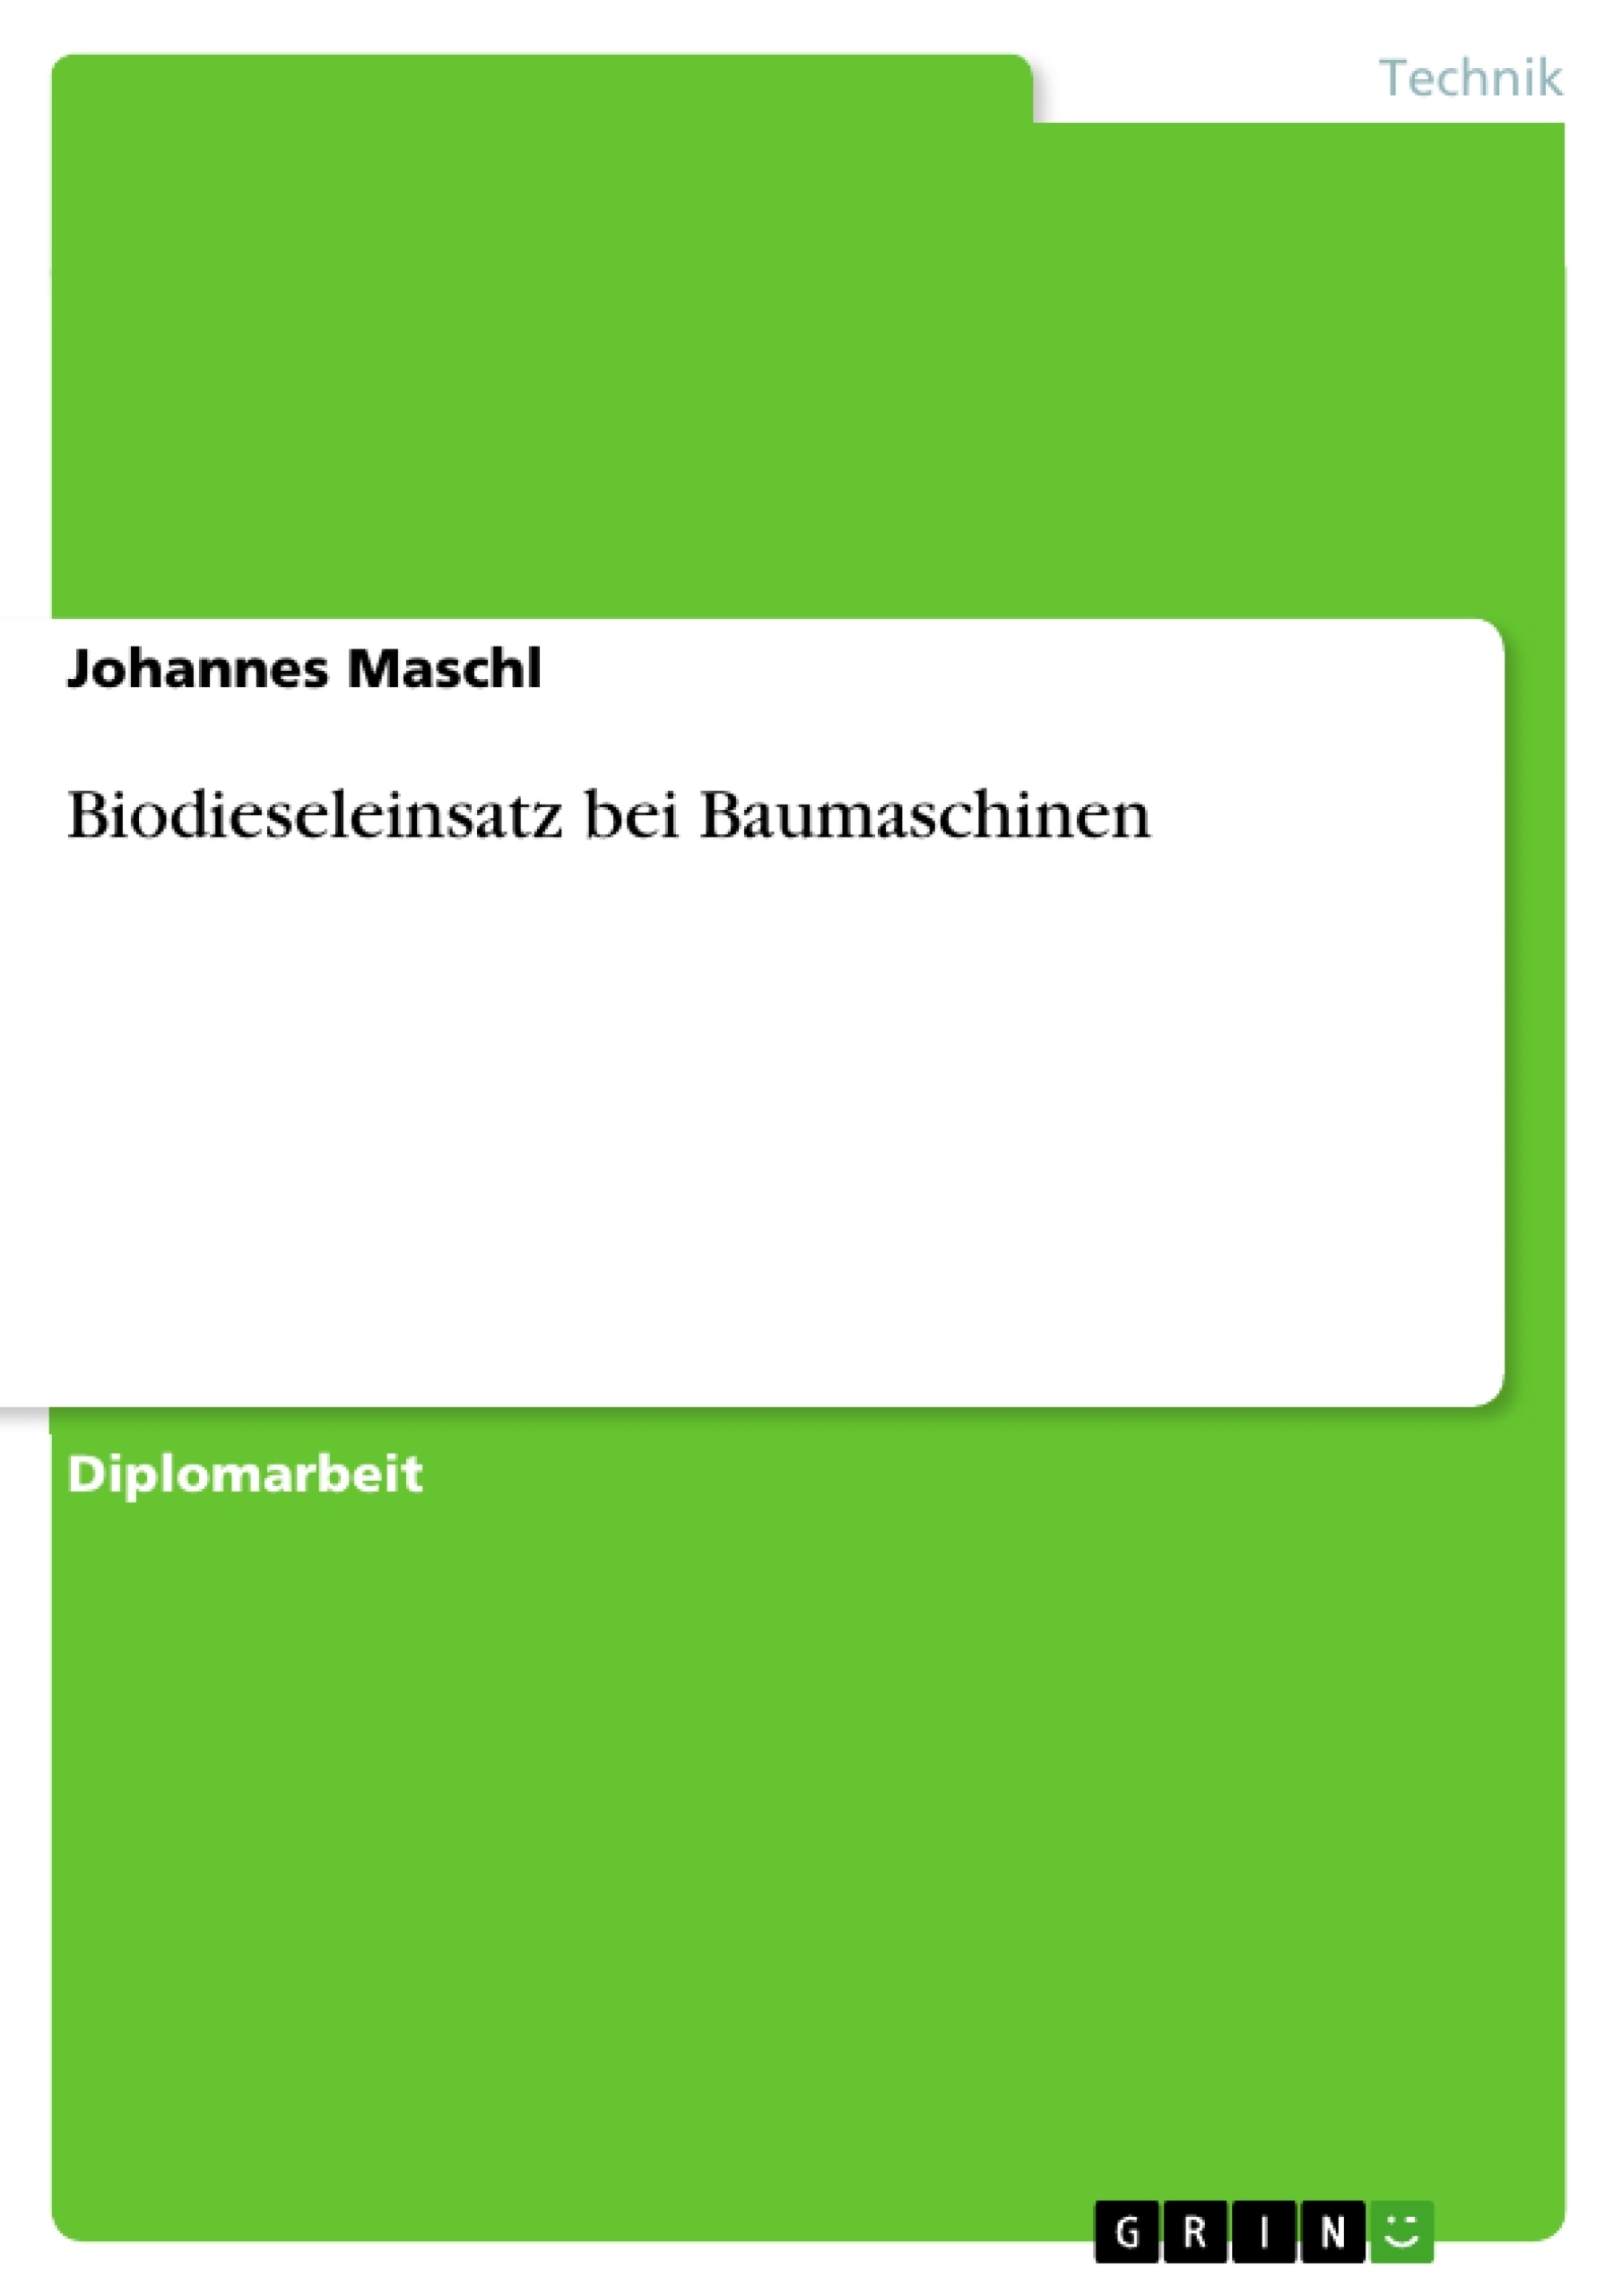 Título: Biodieseleinsatz bei Baumaschinen